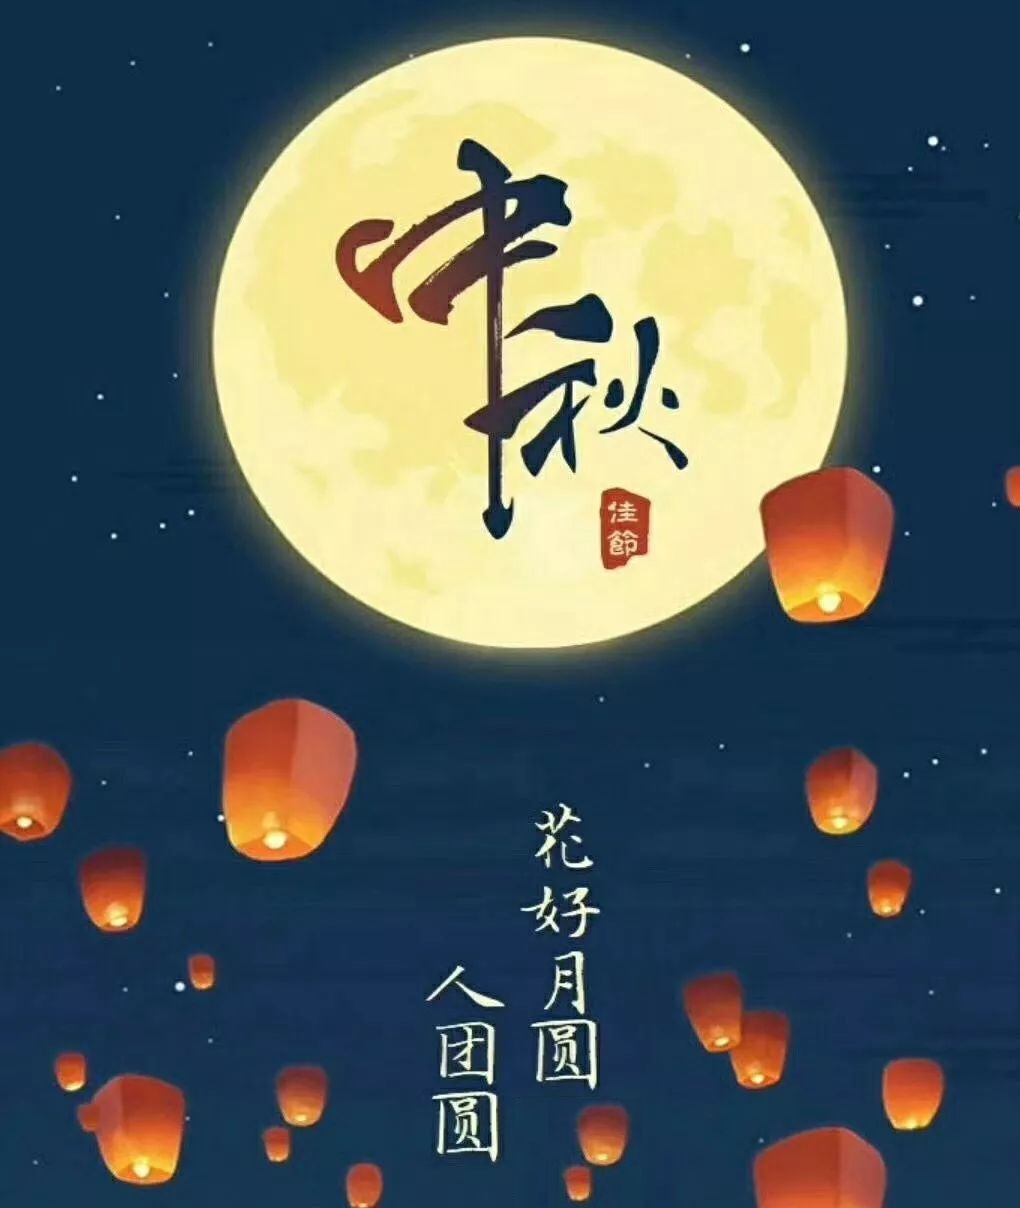 中秋节是几月几日星期几 2019中秋节公历阳历时间哪一天